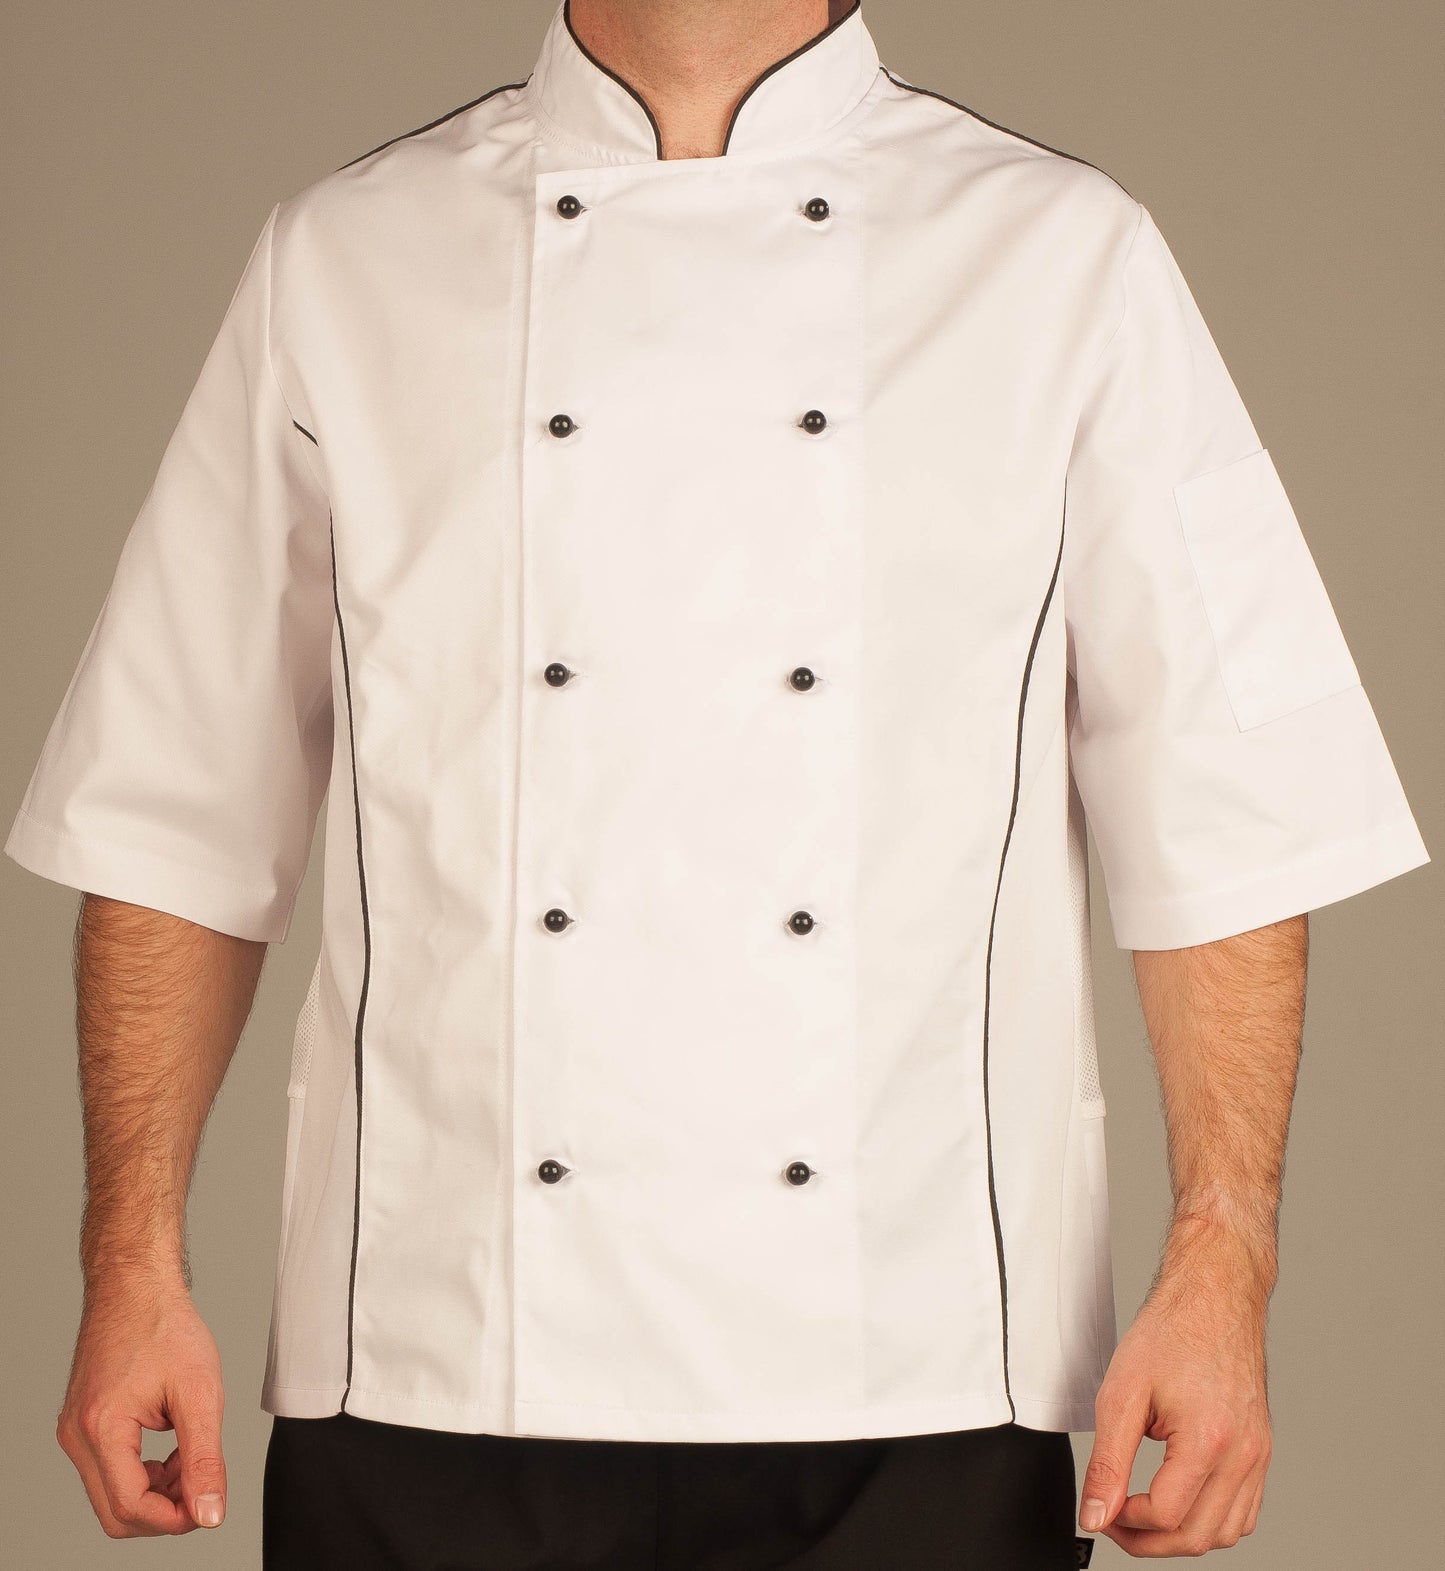 Jacob Chef Jacket Short Sleeves